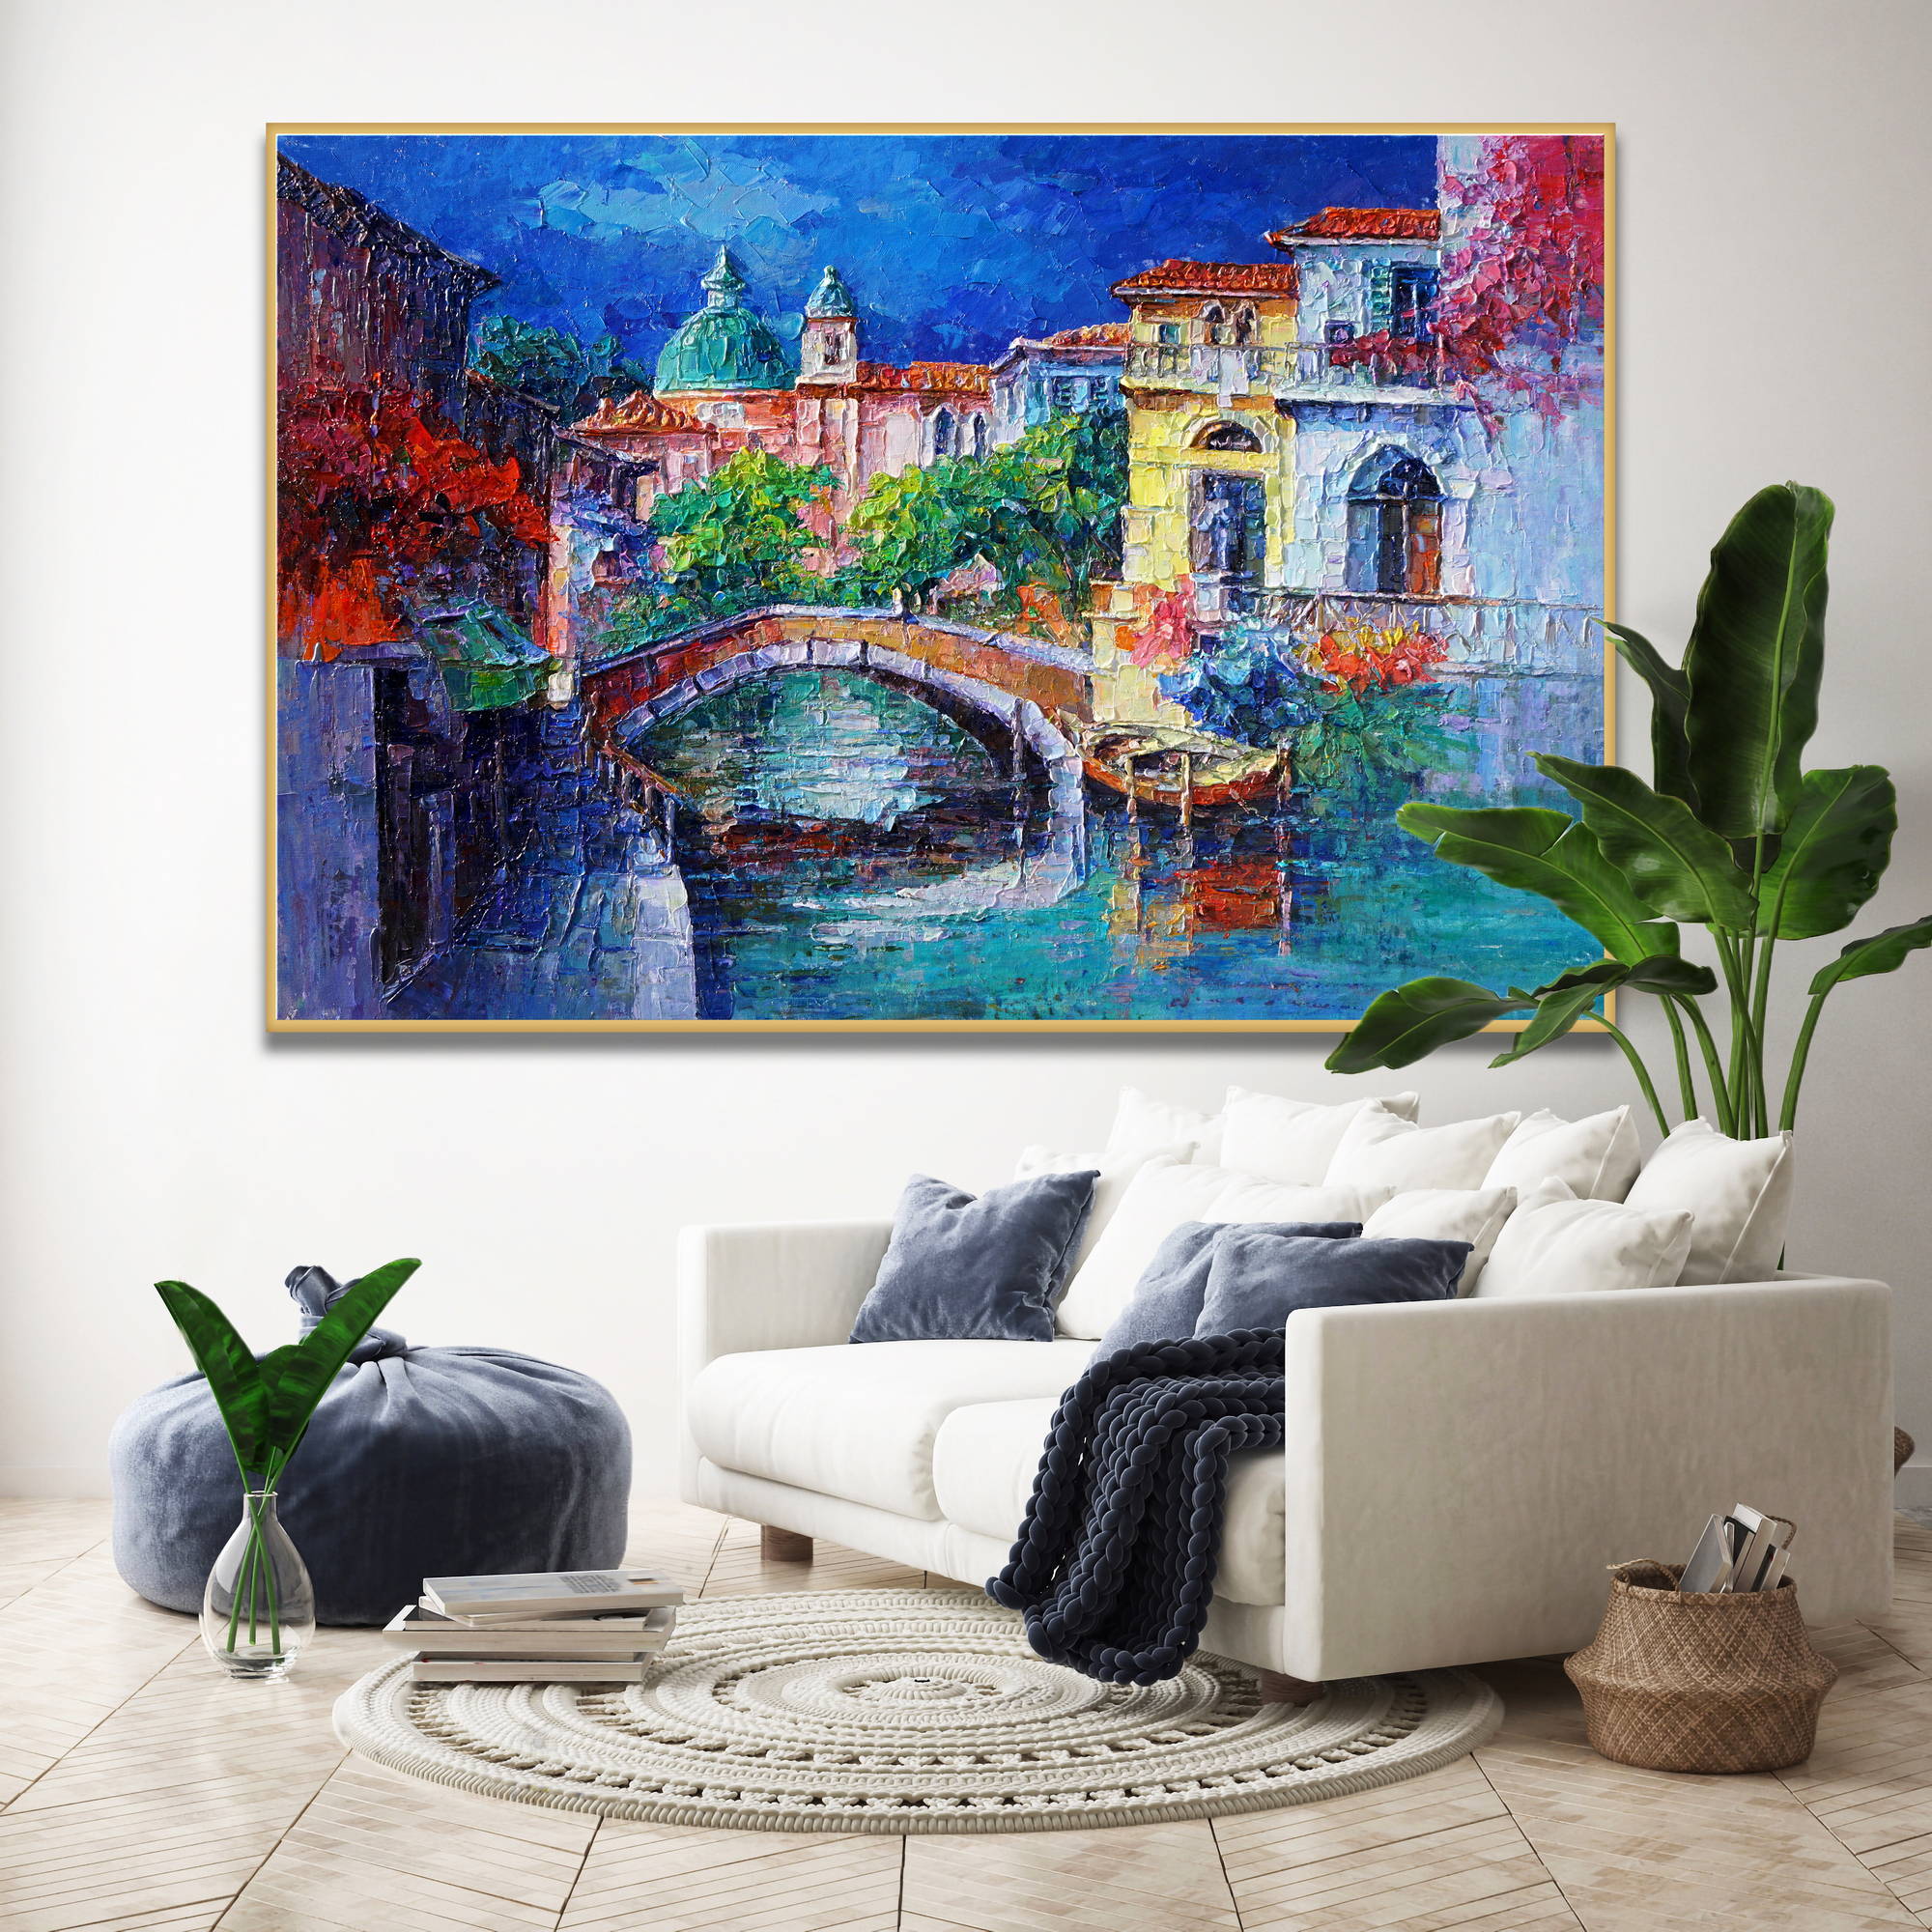 Dipinto con canale di Venezia, ponte in pietra e barca